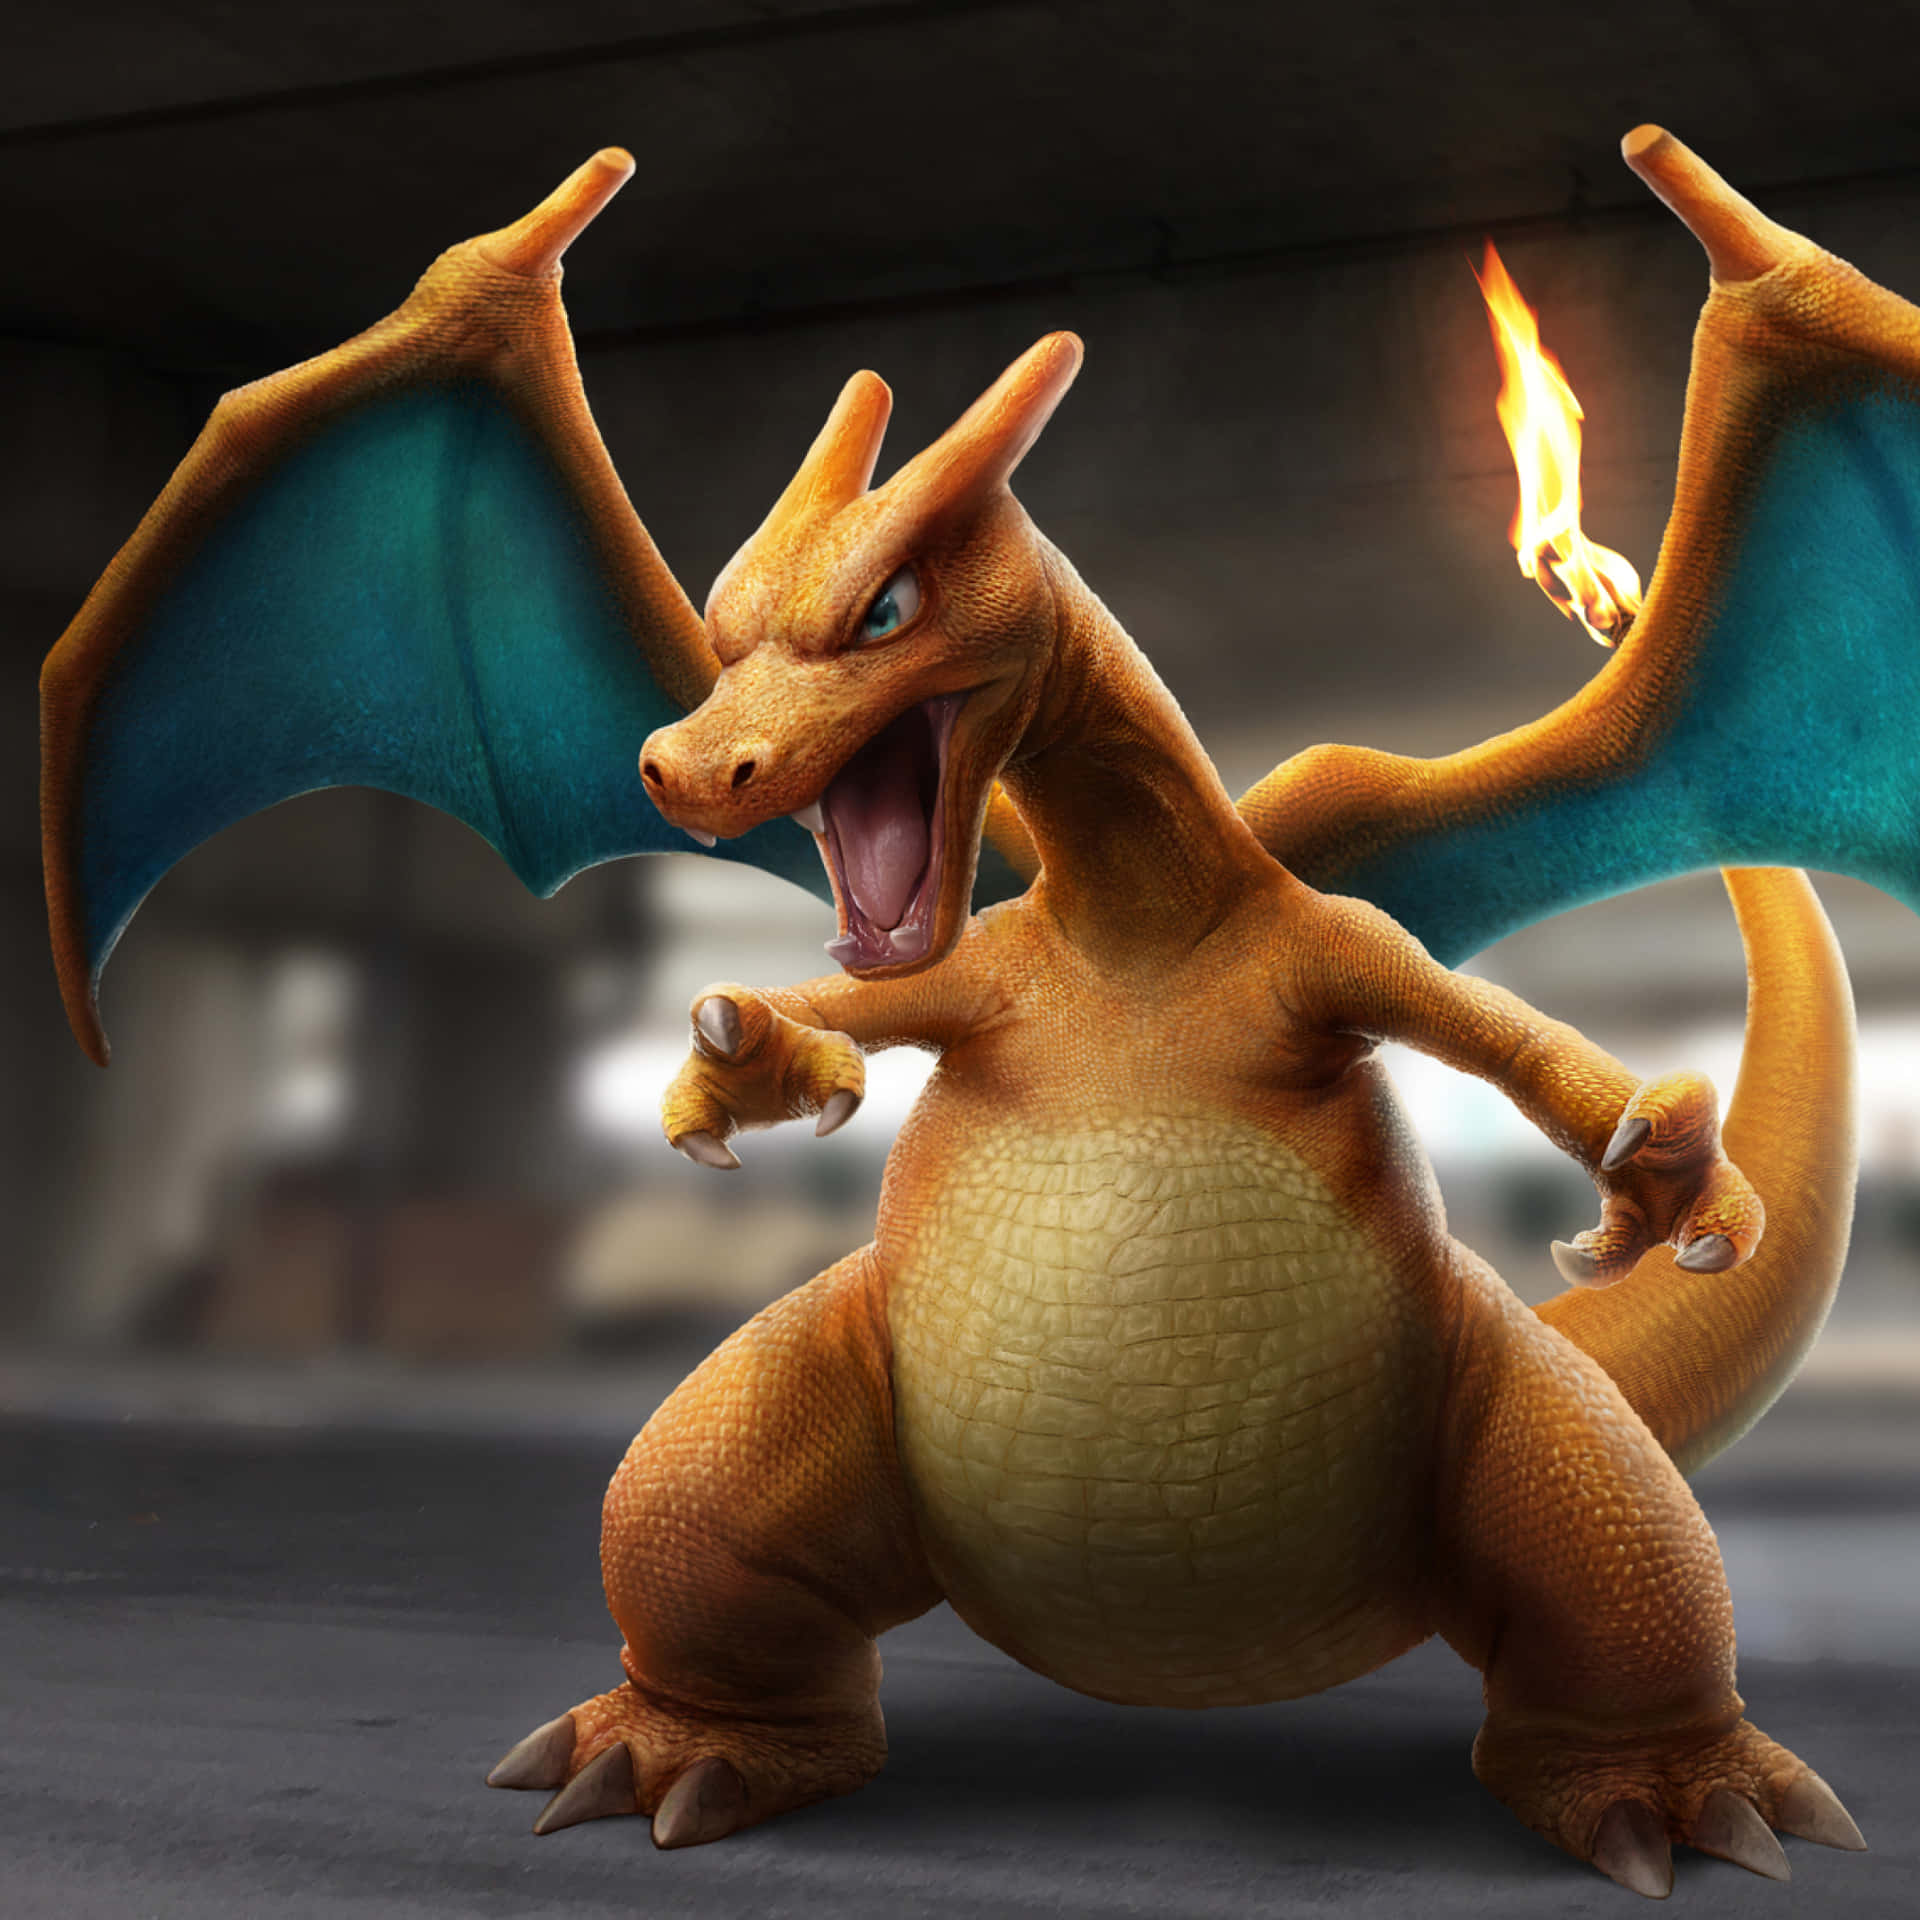 Legendary Fire-Flying Type Pokémon Charizard Wallpaper